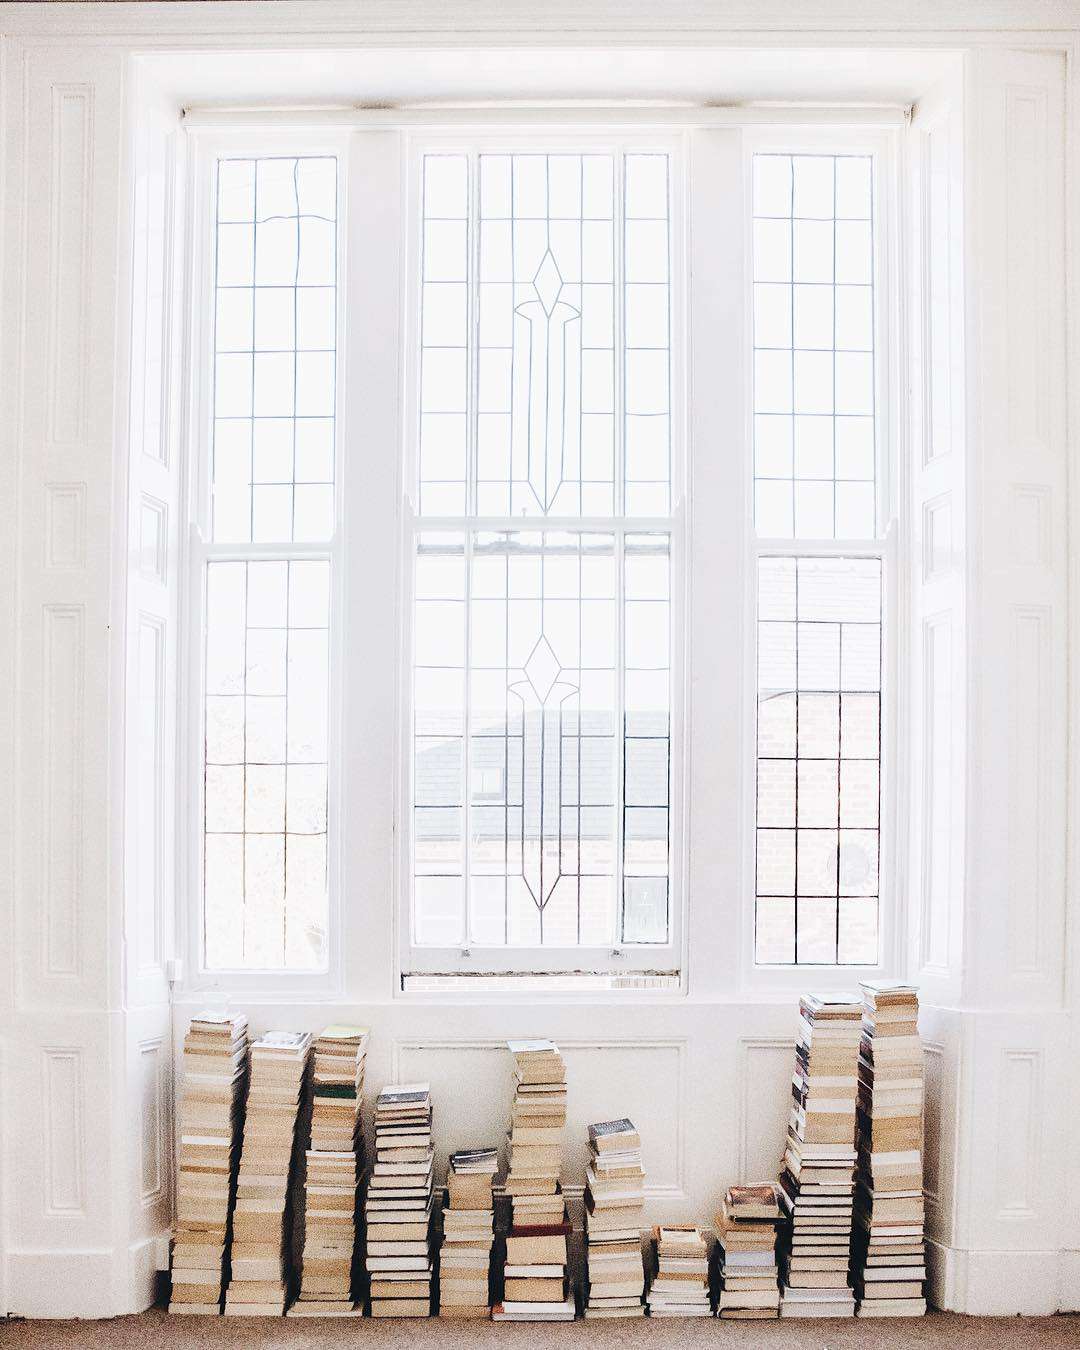 Pilhas de livros empilhados sob a janela